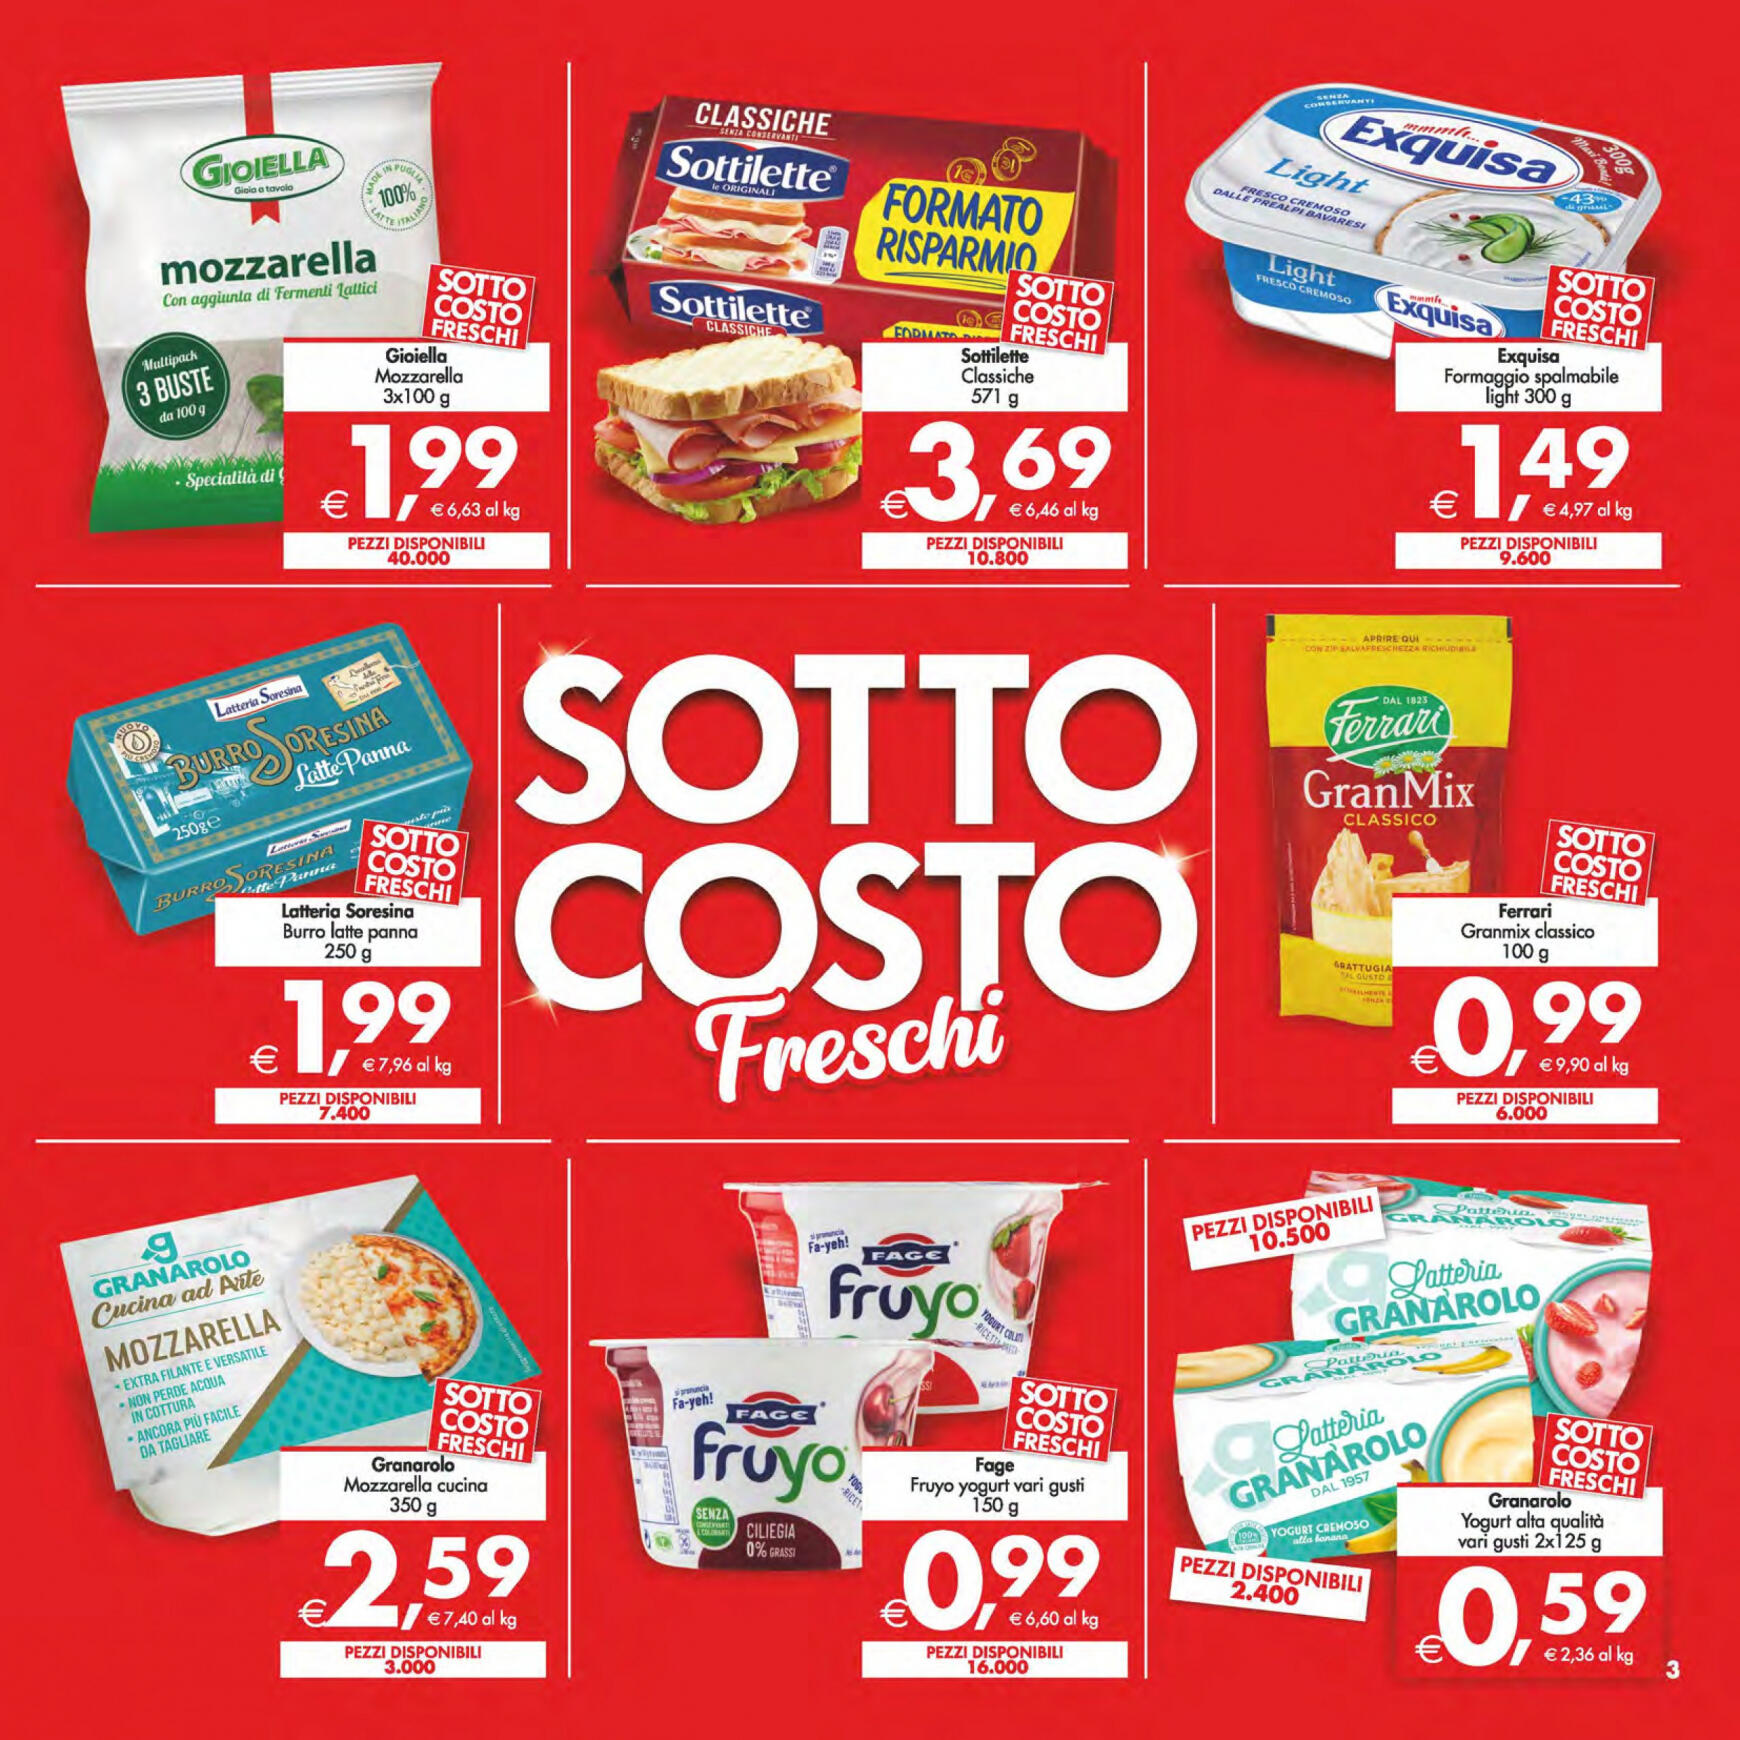 deco - Nuovo volantino Decò - Maxistore/Supermercati/Local 14.05. - 23.05. - page: 3